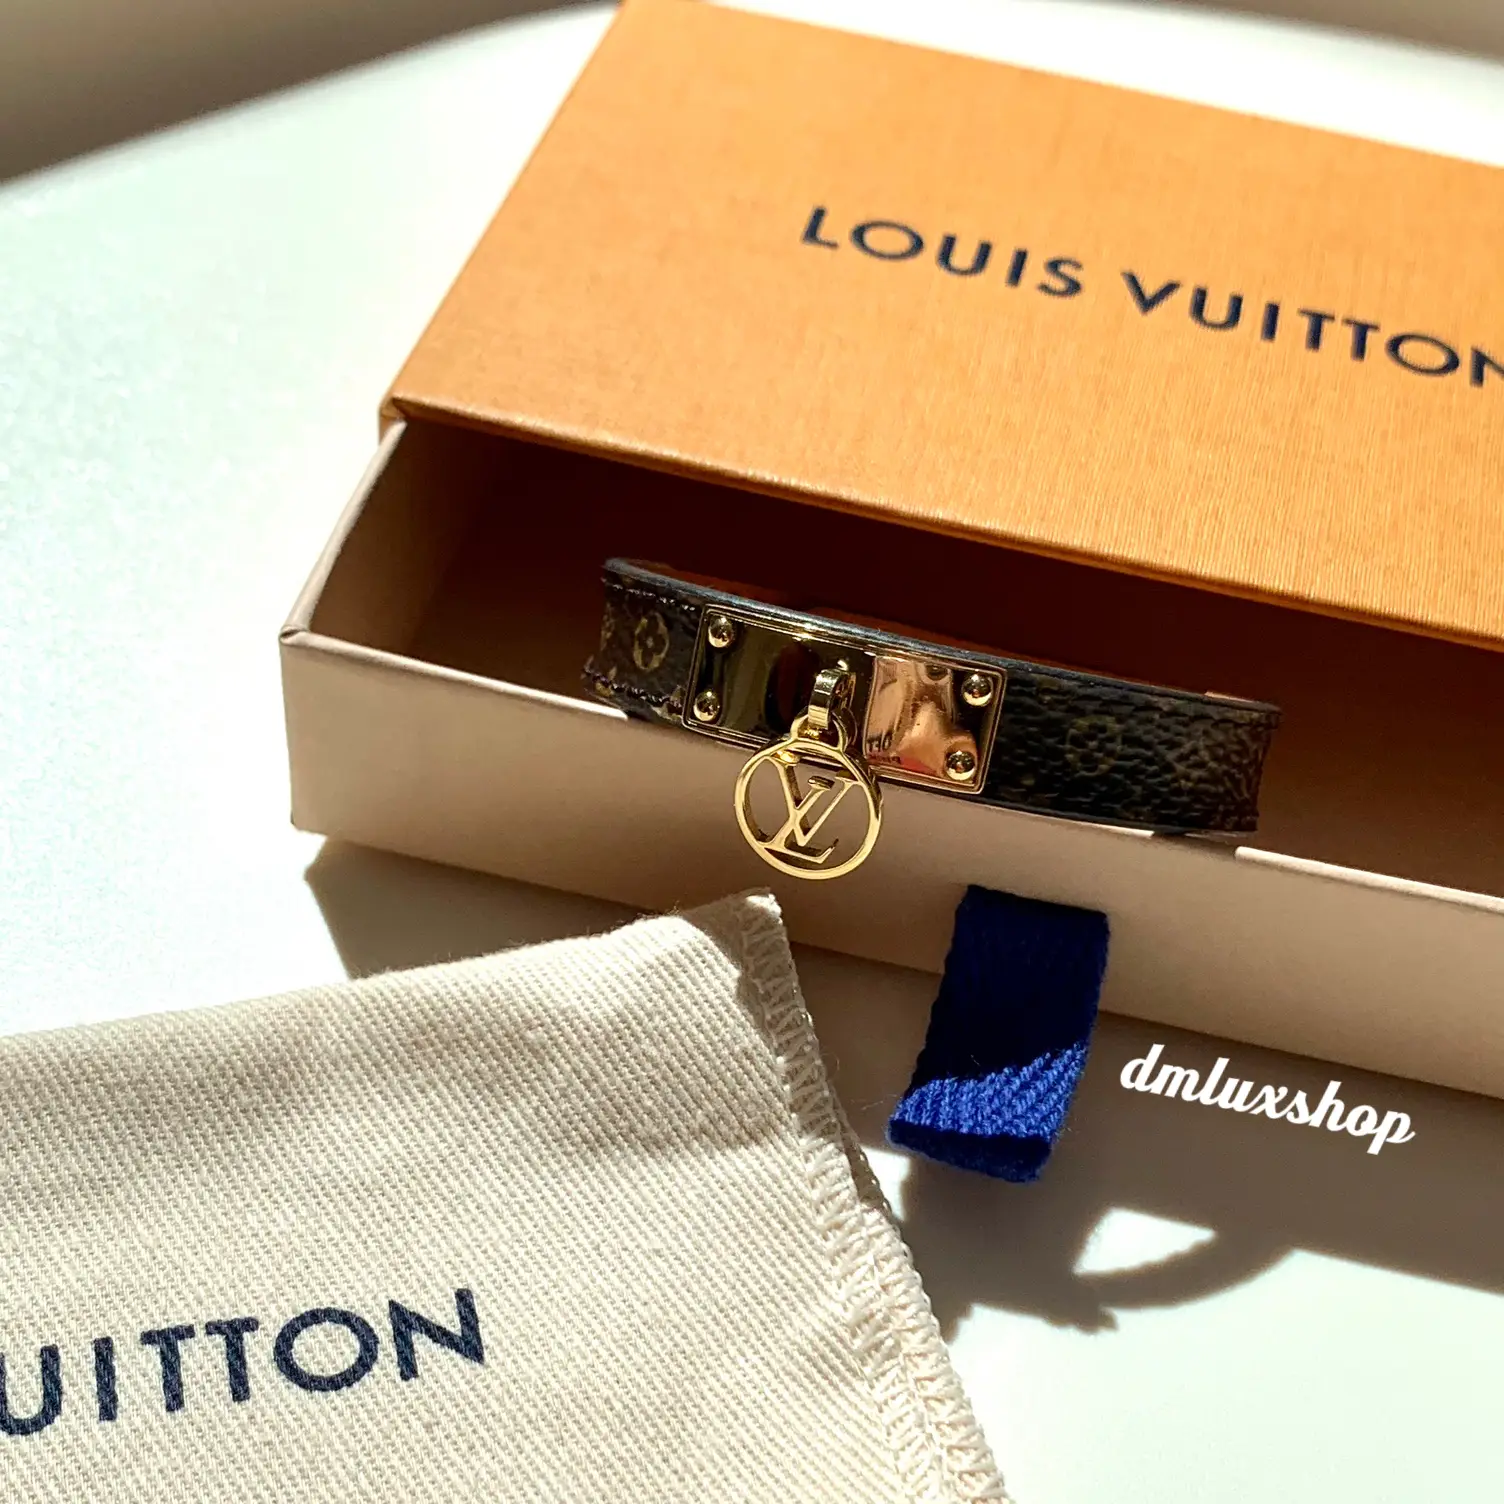 🇲🇾Louis Vuitton Logomania Bracelet, Gallery posted by DM Luxshop